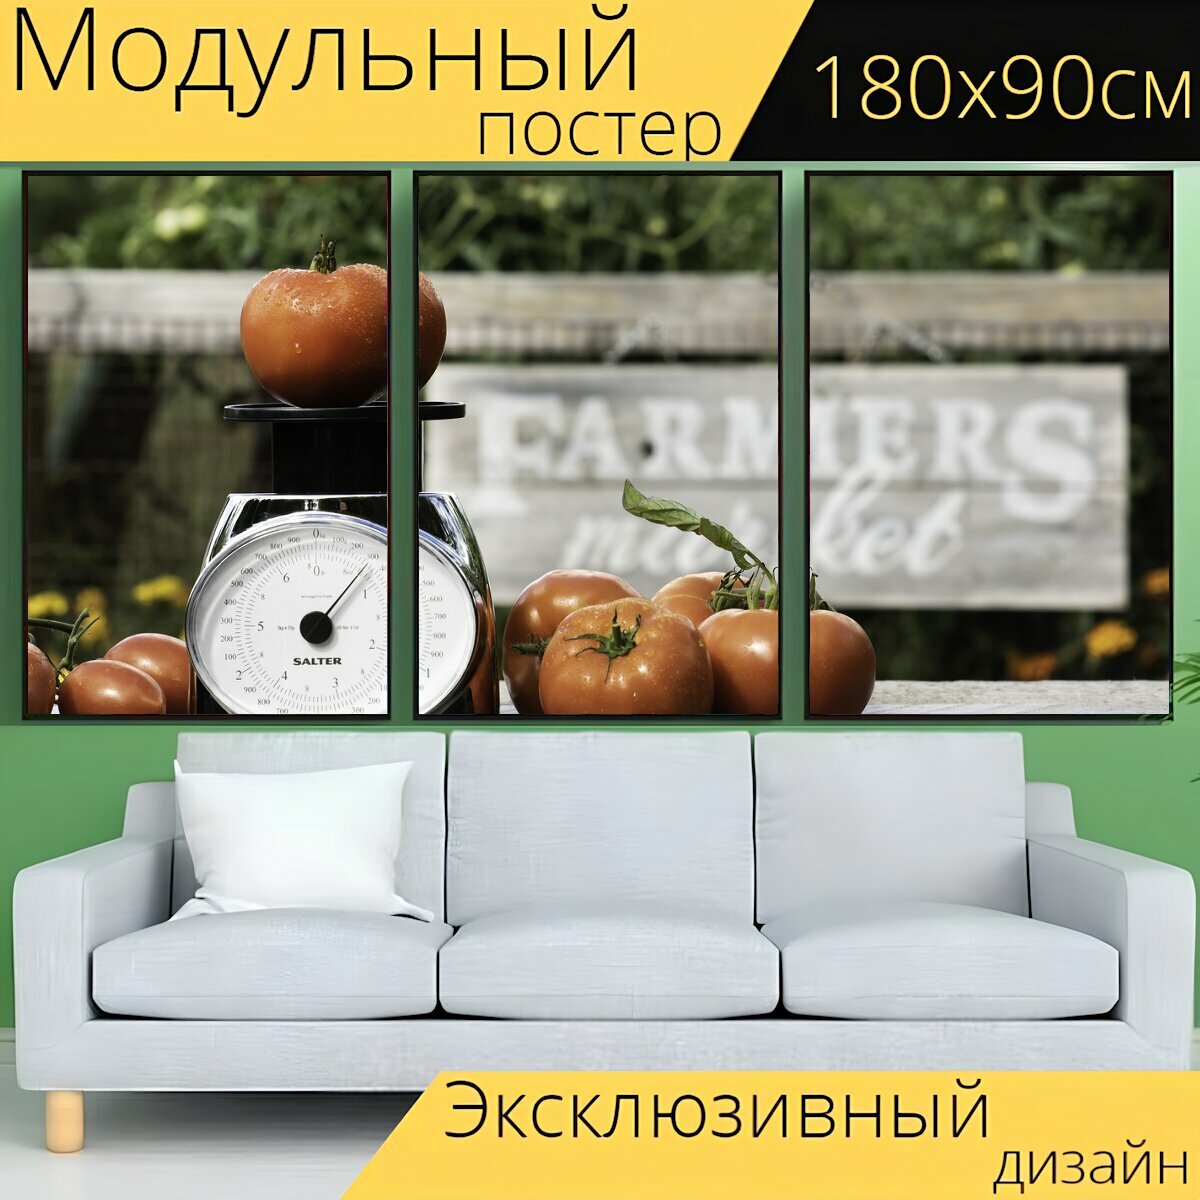 Модульный постер "Помидоры, овощи, рынок" 180 x 90 см. для интерьера